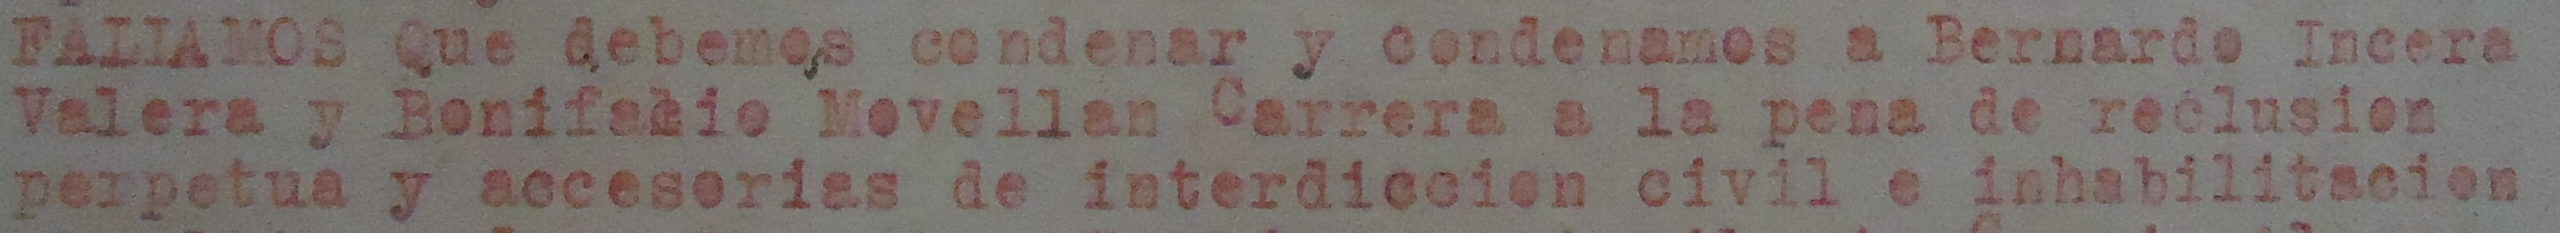 Párrafo de la sentencia con la condena a reclusión perpetua. Archivo Histórico Provincial de Cádiz.